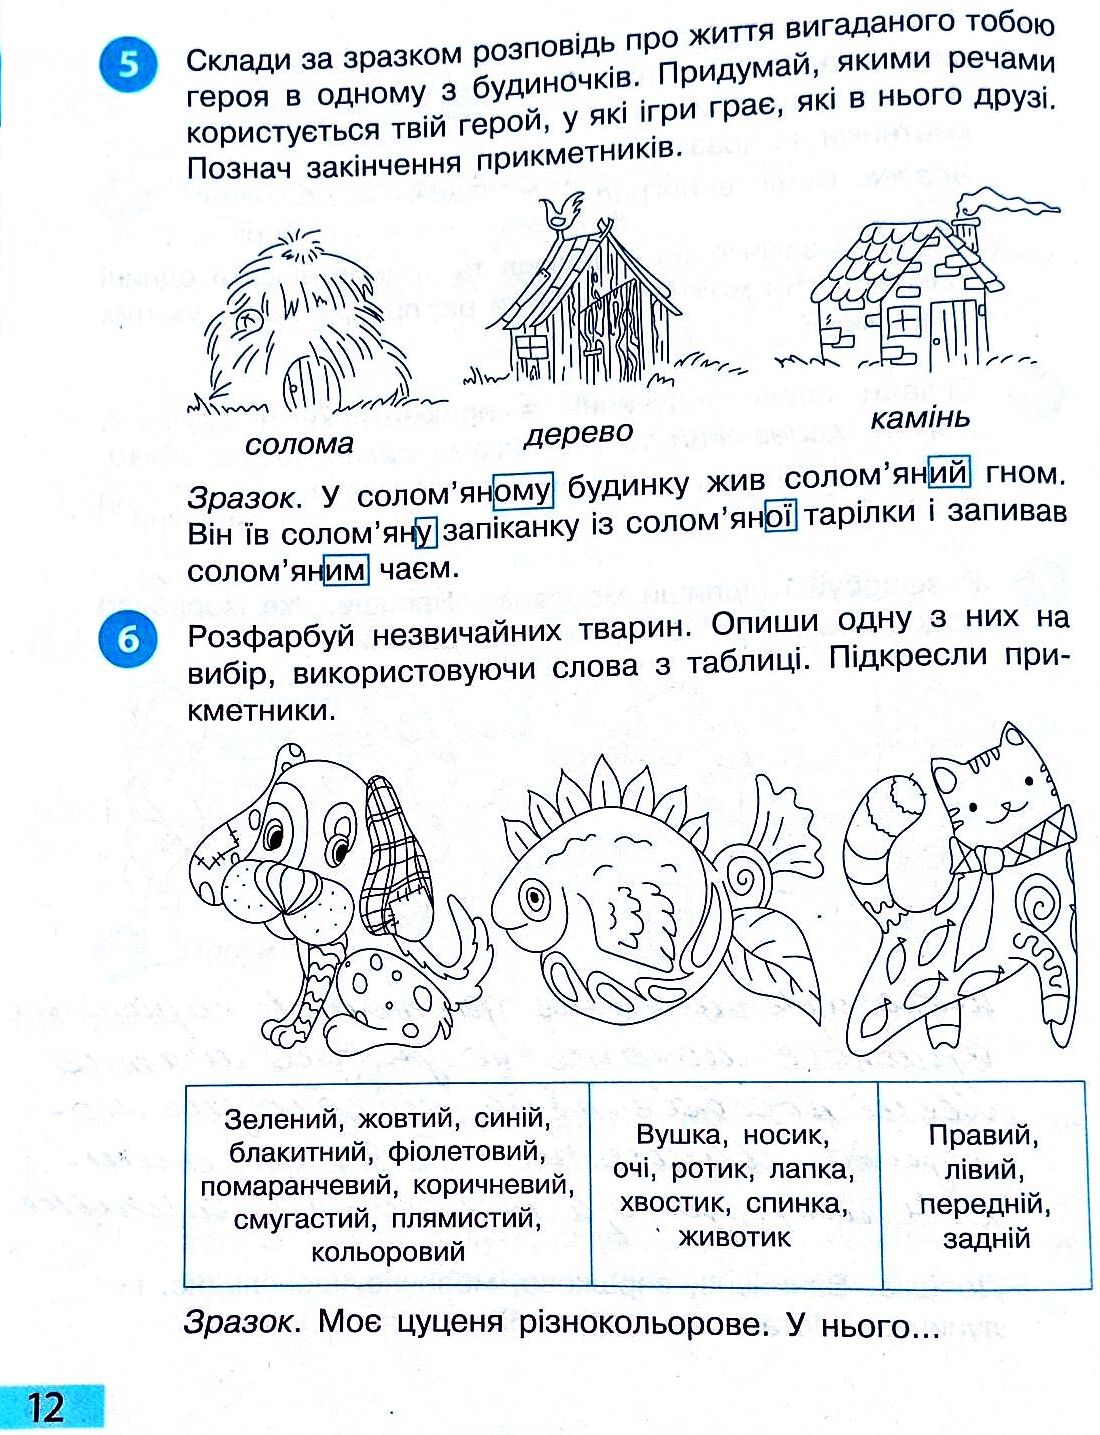 Сторінка 12 частина 2 гдз 3 клас робочий зошит українська мова Большакова